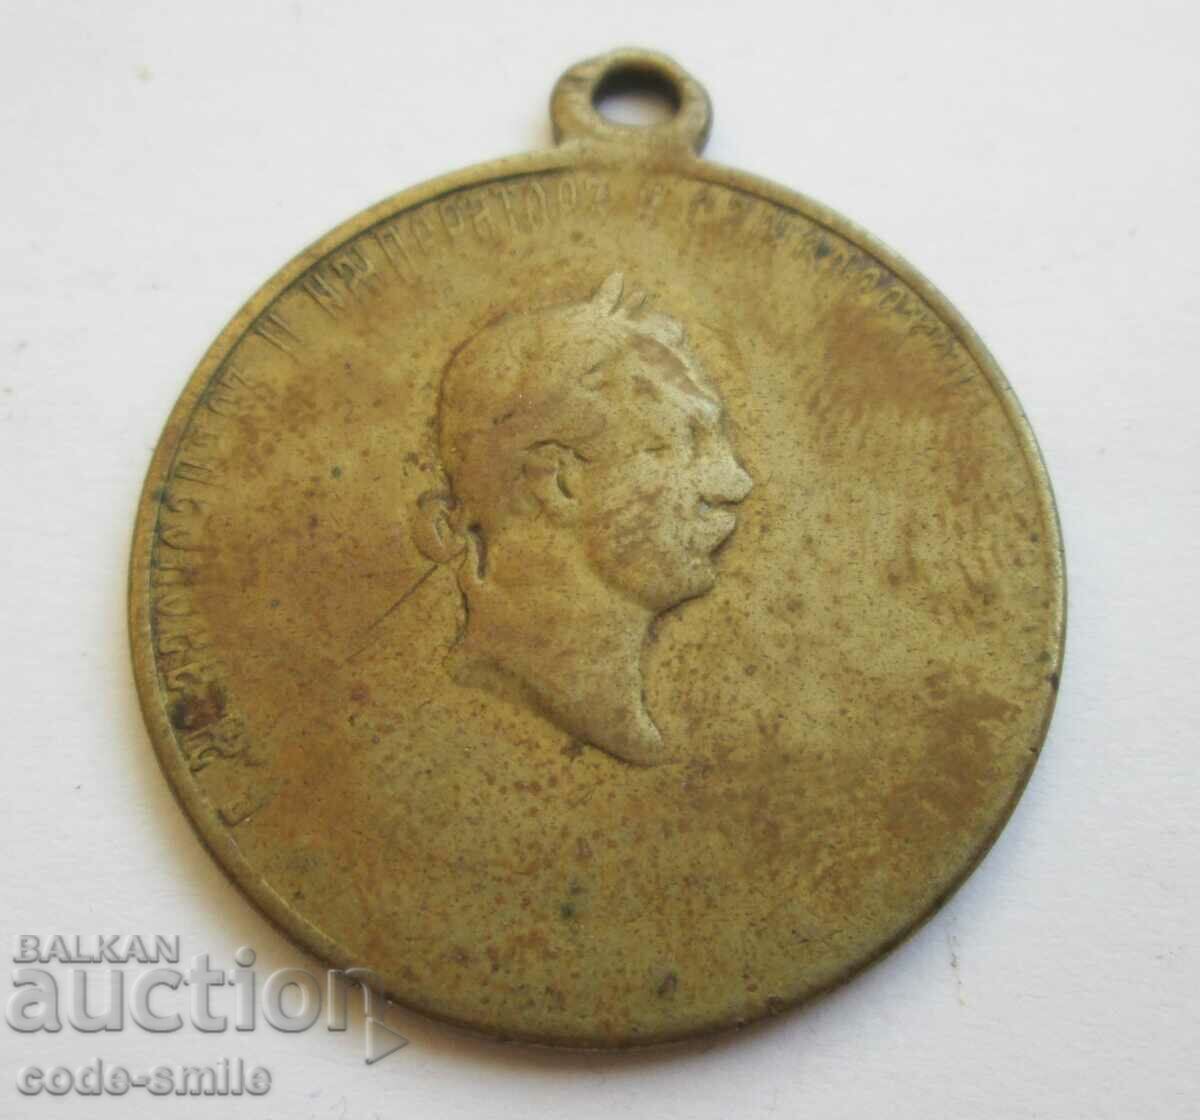 Veche medalie de miliție din Războiul de Independență ruso-turc